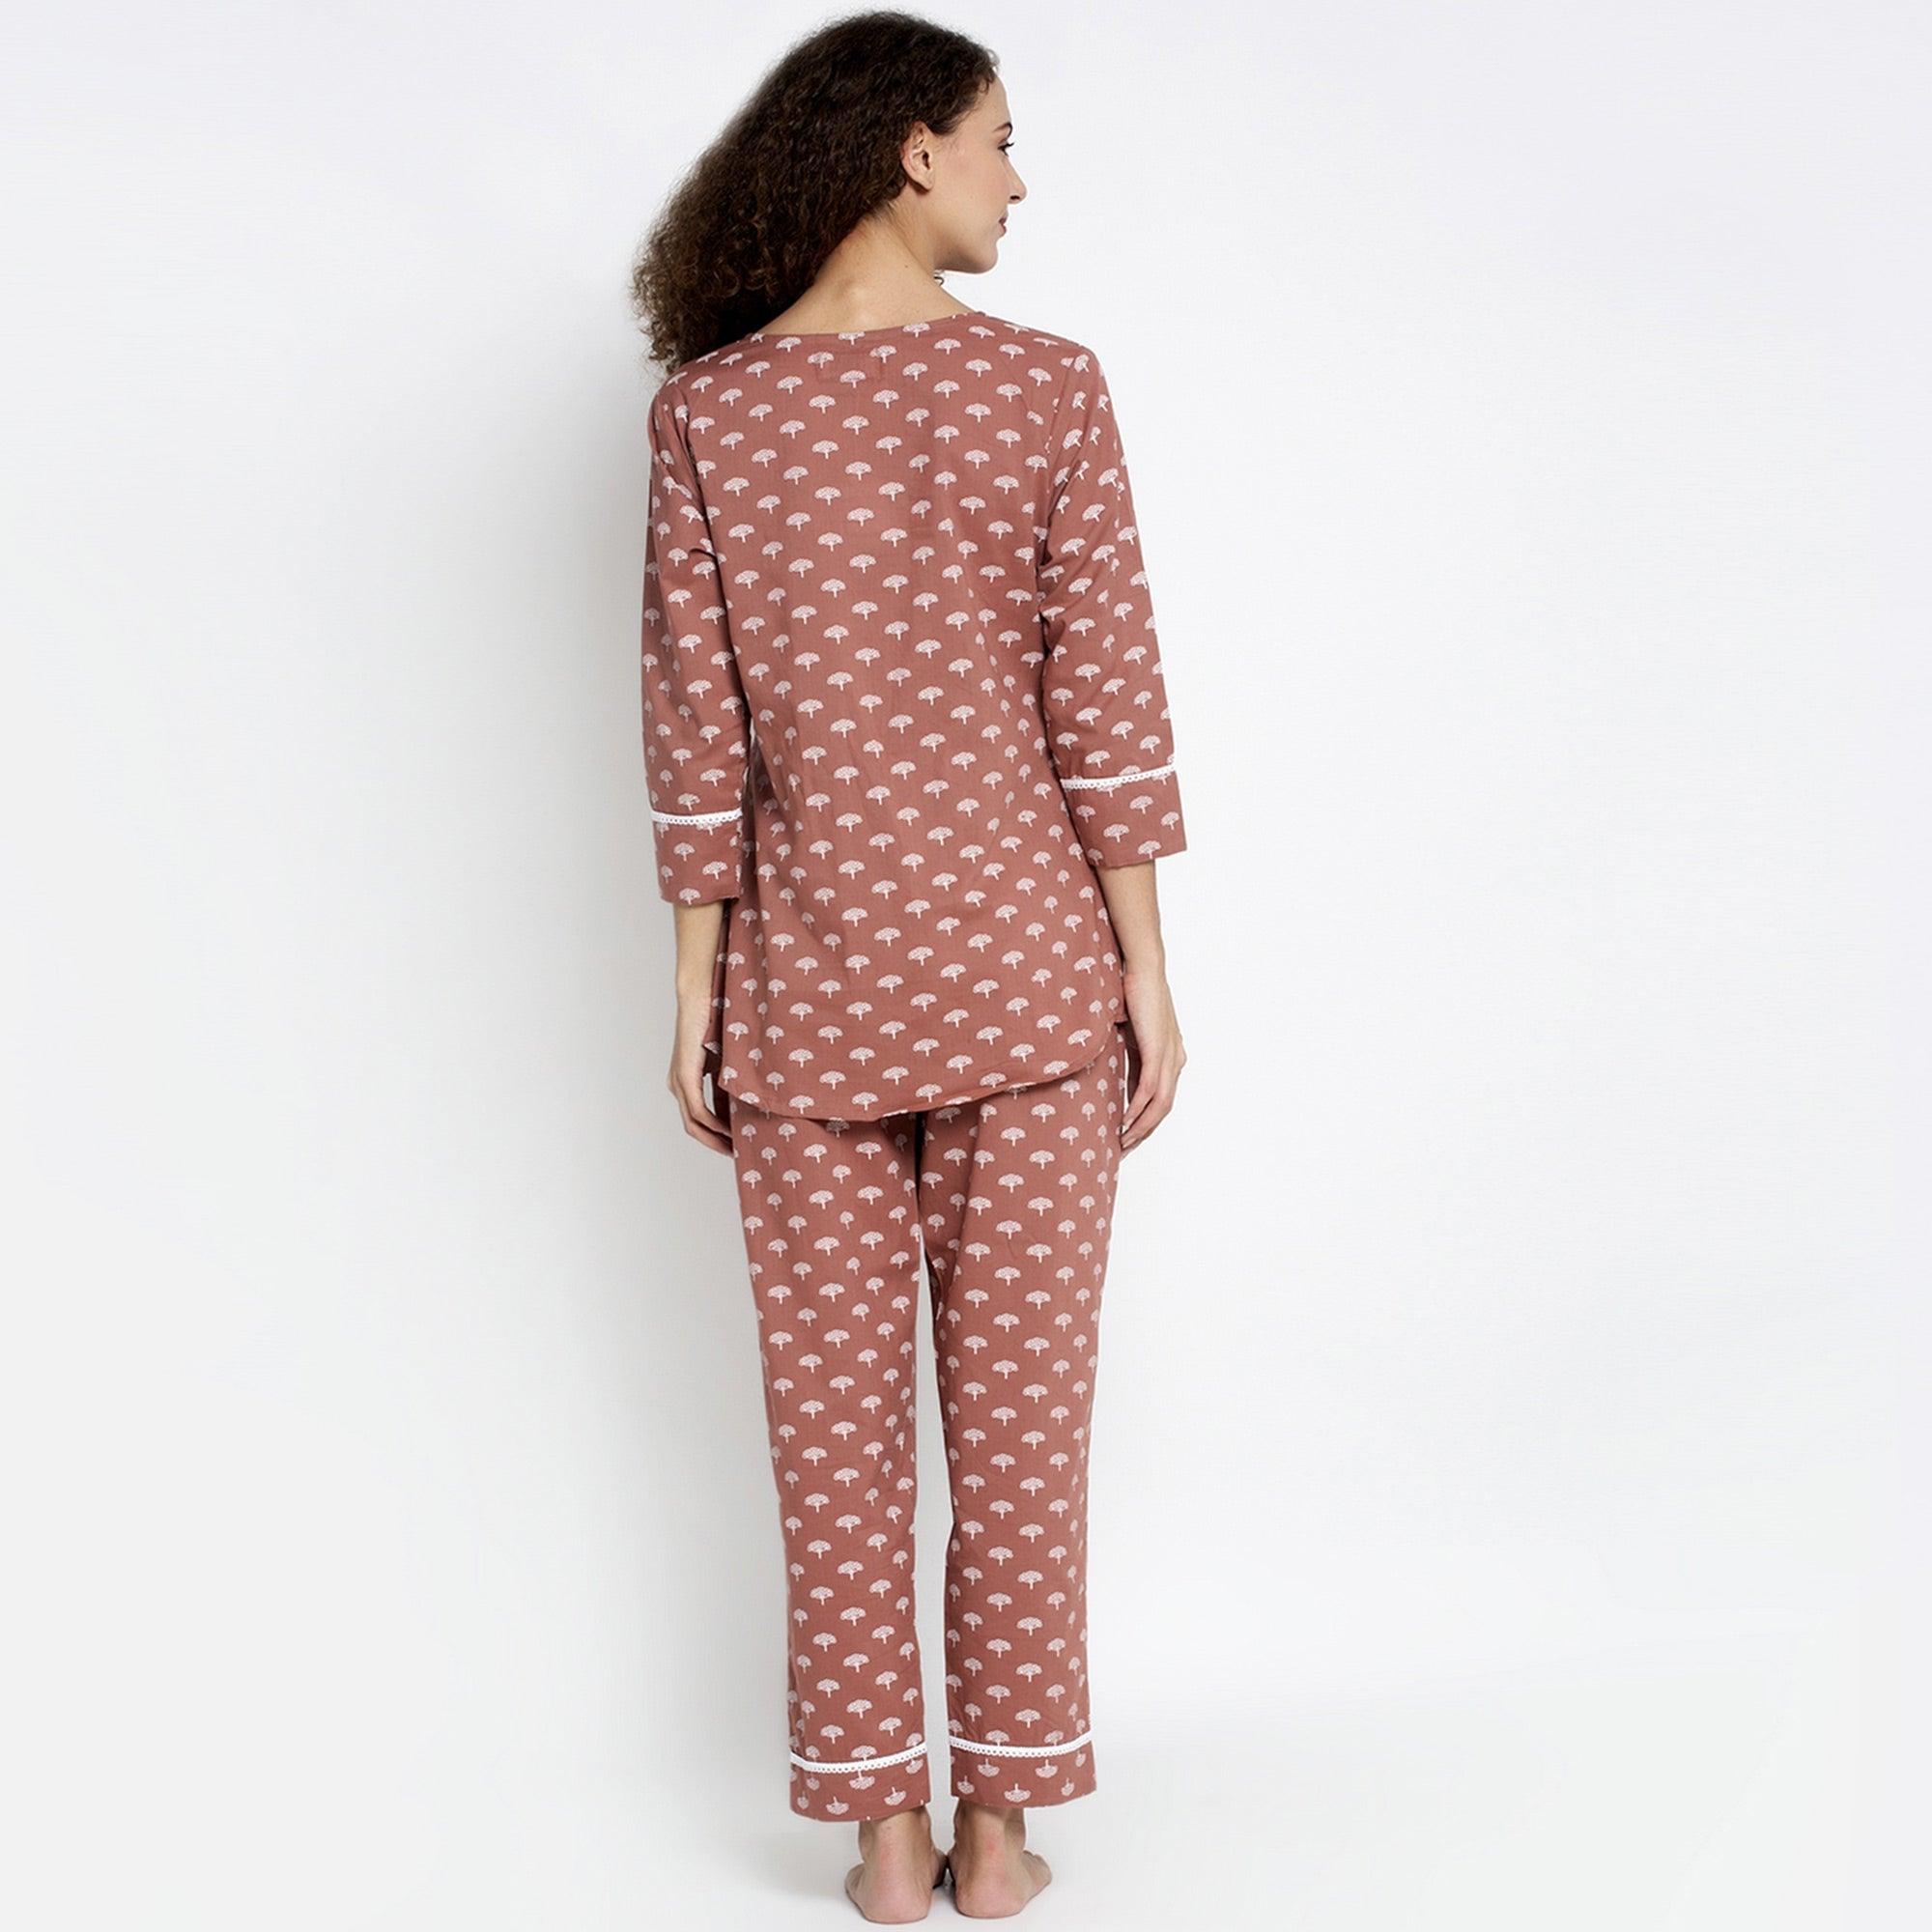 Aujjessa - Light Brown Cotton Printed Night Suit - Peachmode